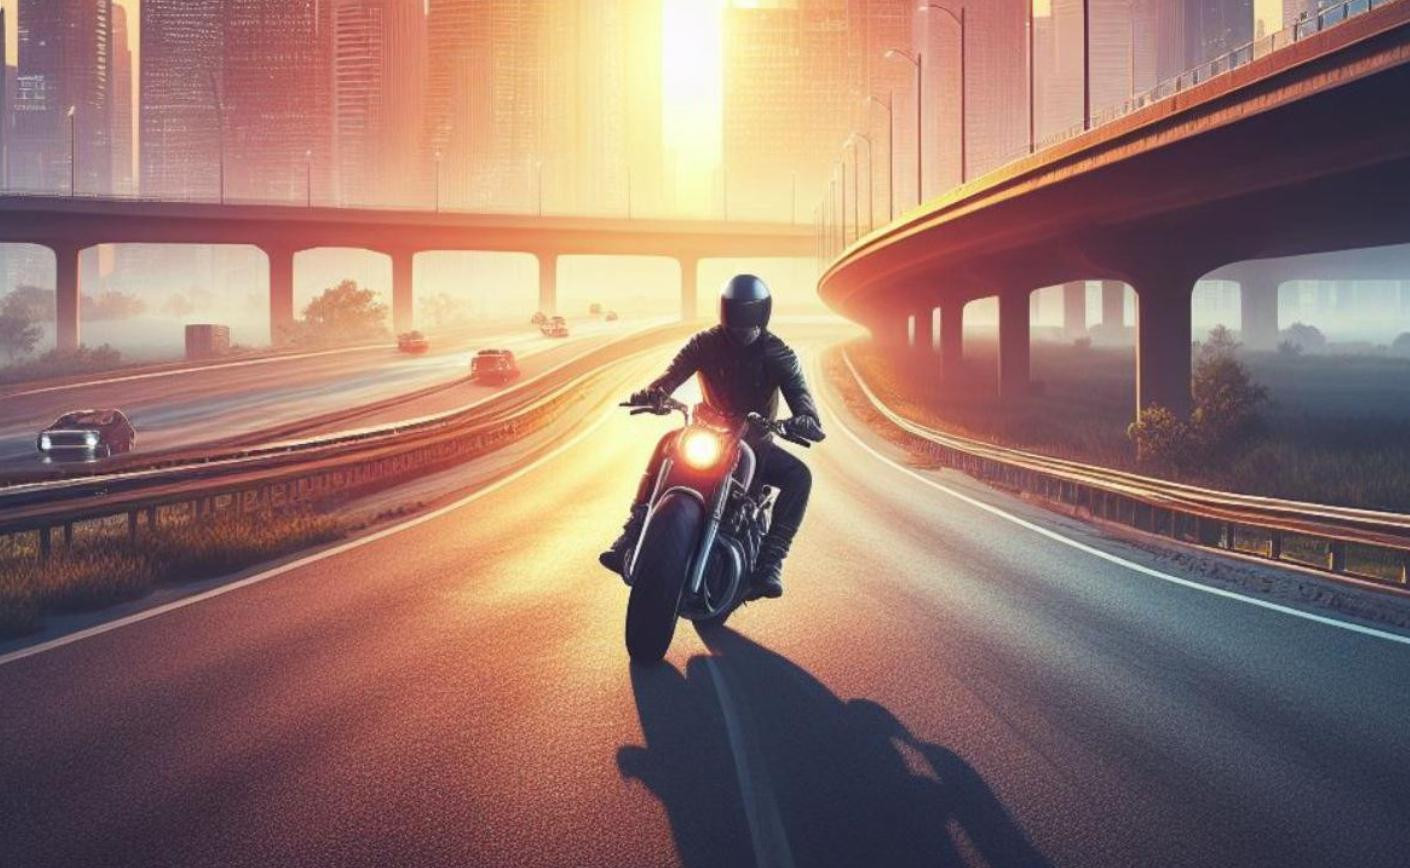 Kask motocyklowy - klucz do bezpiecznej jazdy